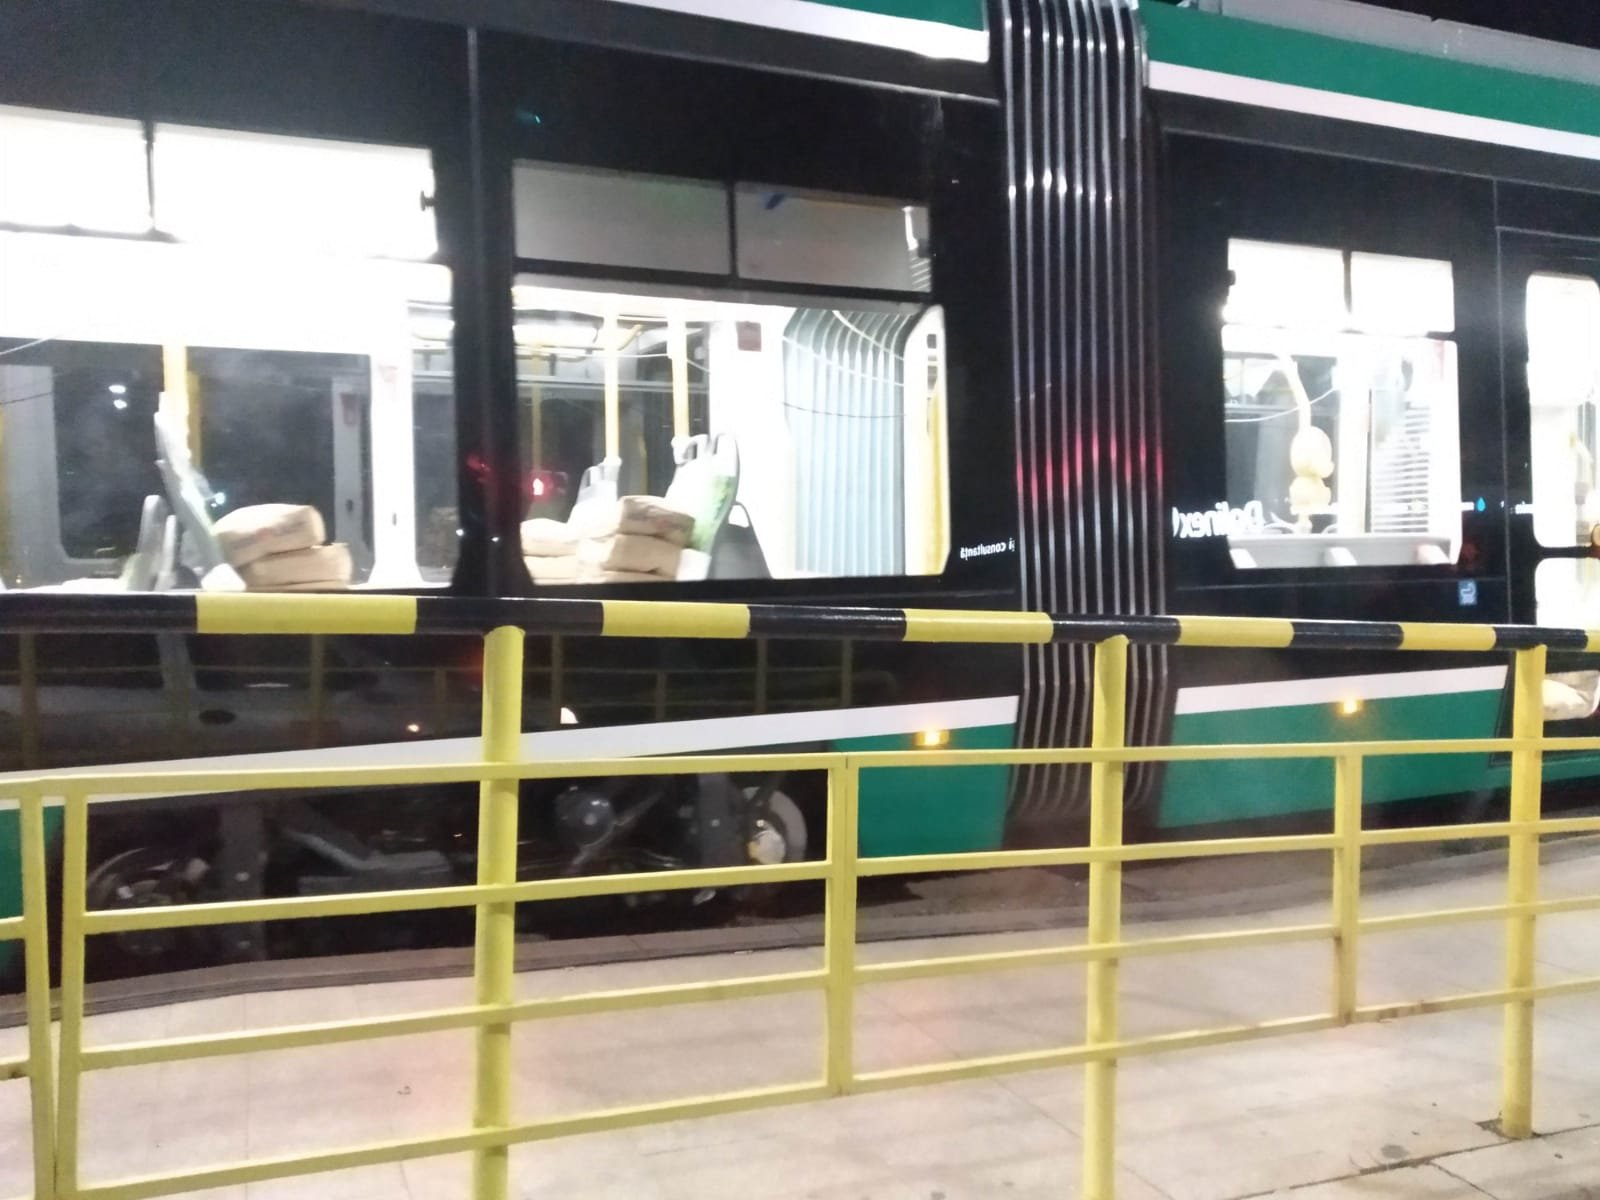  FOTO – Noul tramvai adus din Turcia, verificat aseară de CTP pe străzi cu saci de nisip